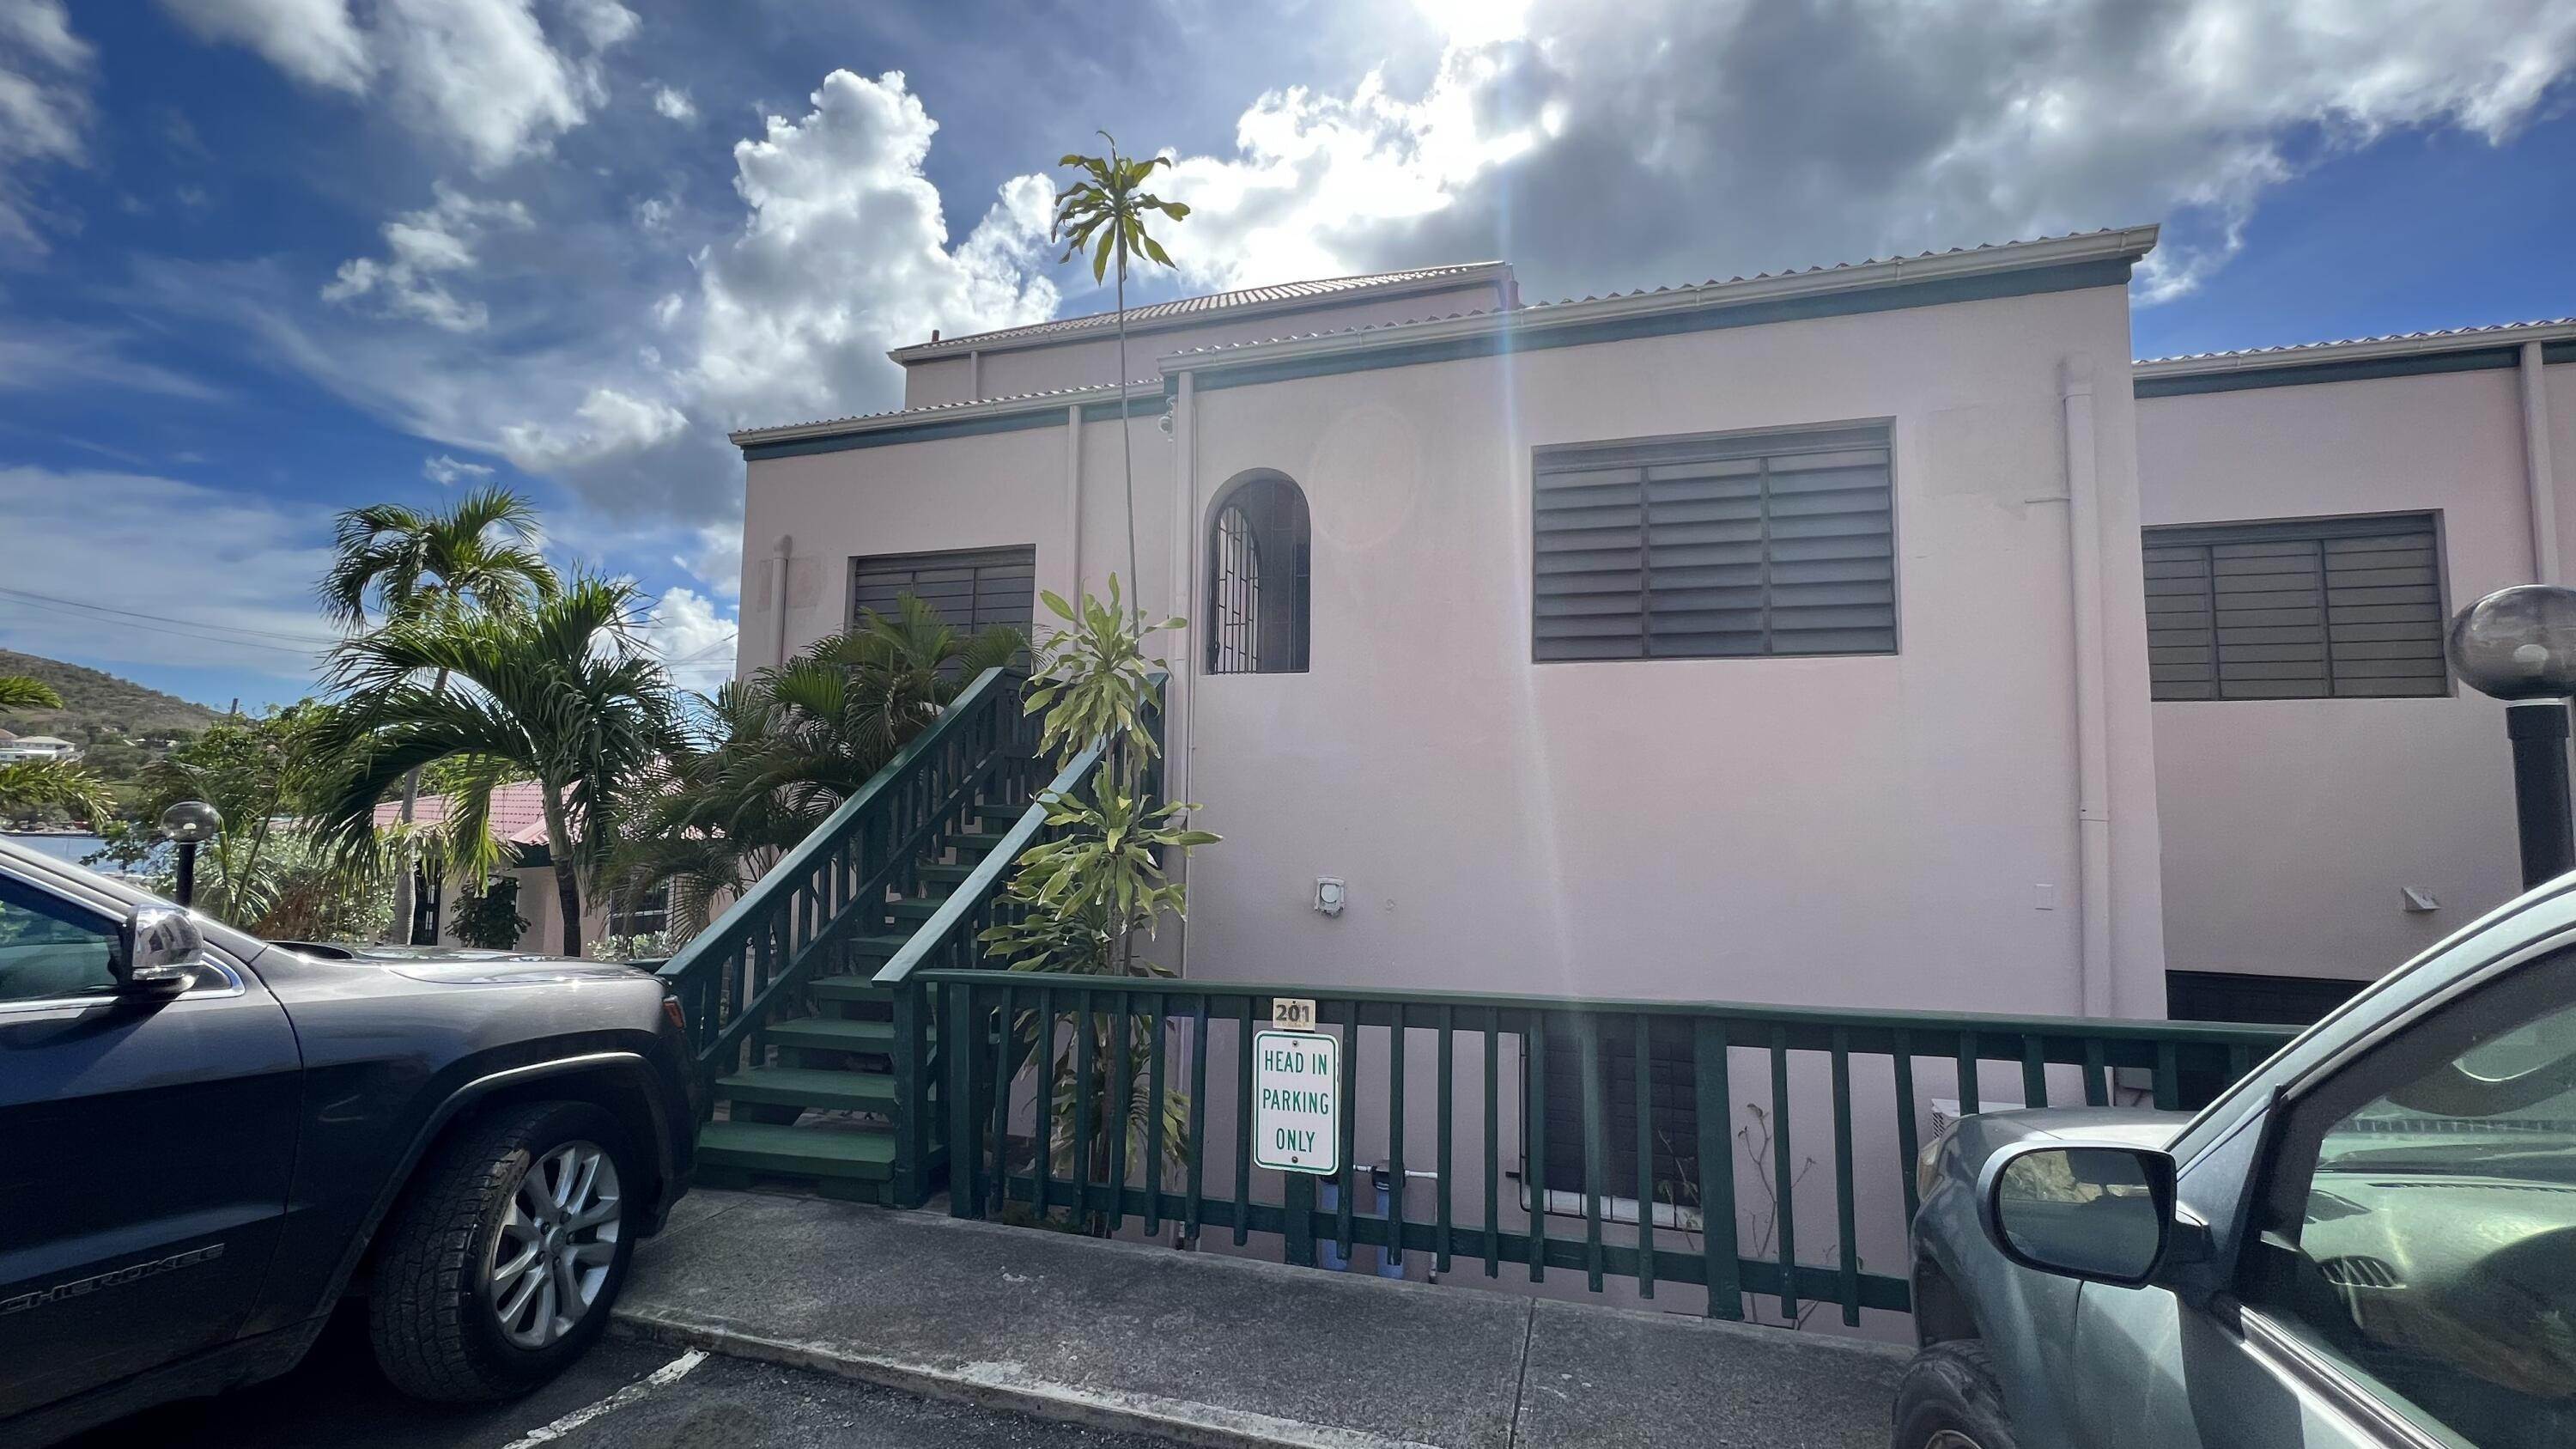 Condominiums at Schooner Bay 201 Mt. Welcome EA St Croix, Virgin Islands 00820 United States Virgin Islands